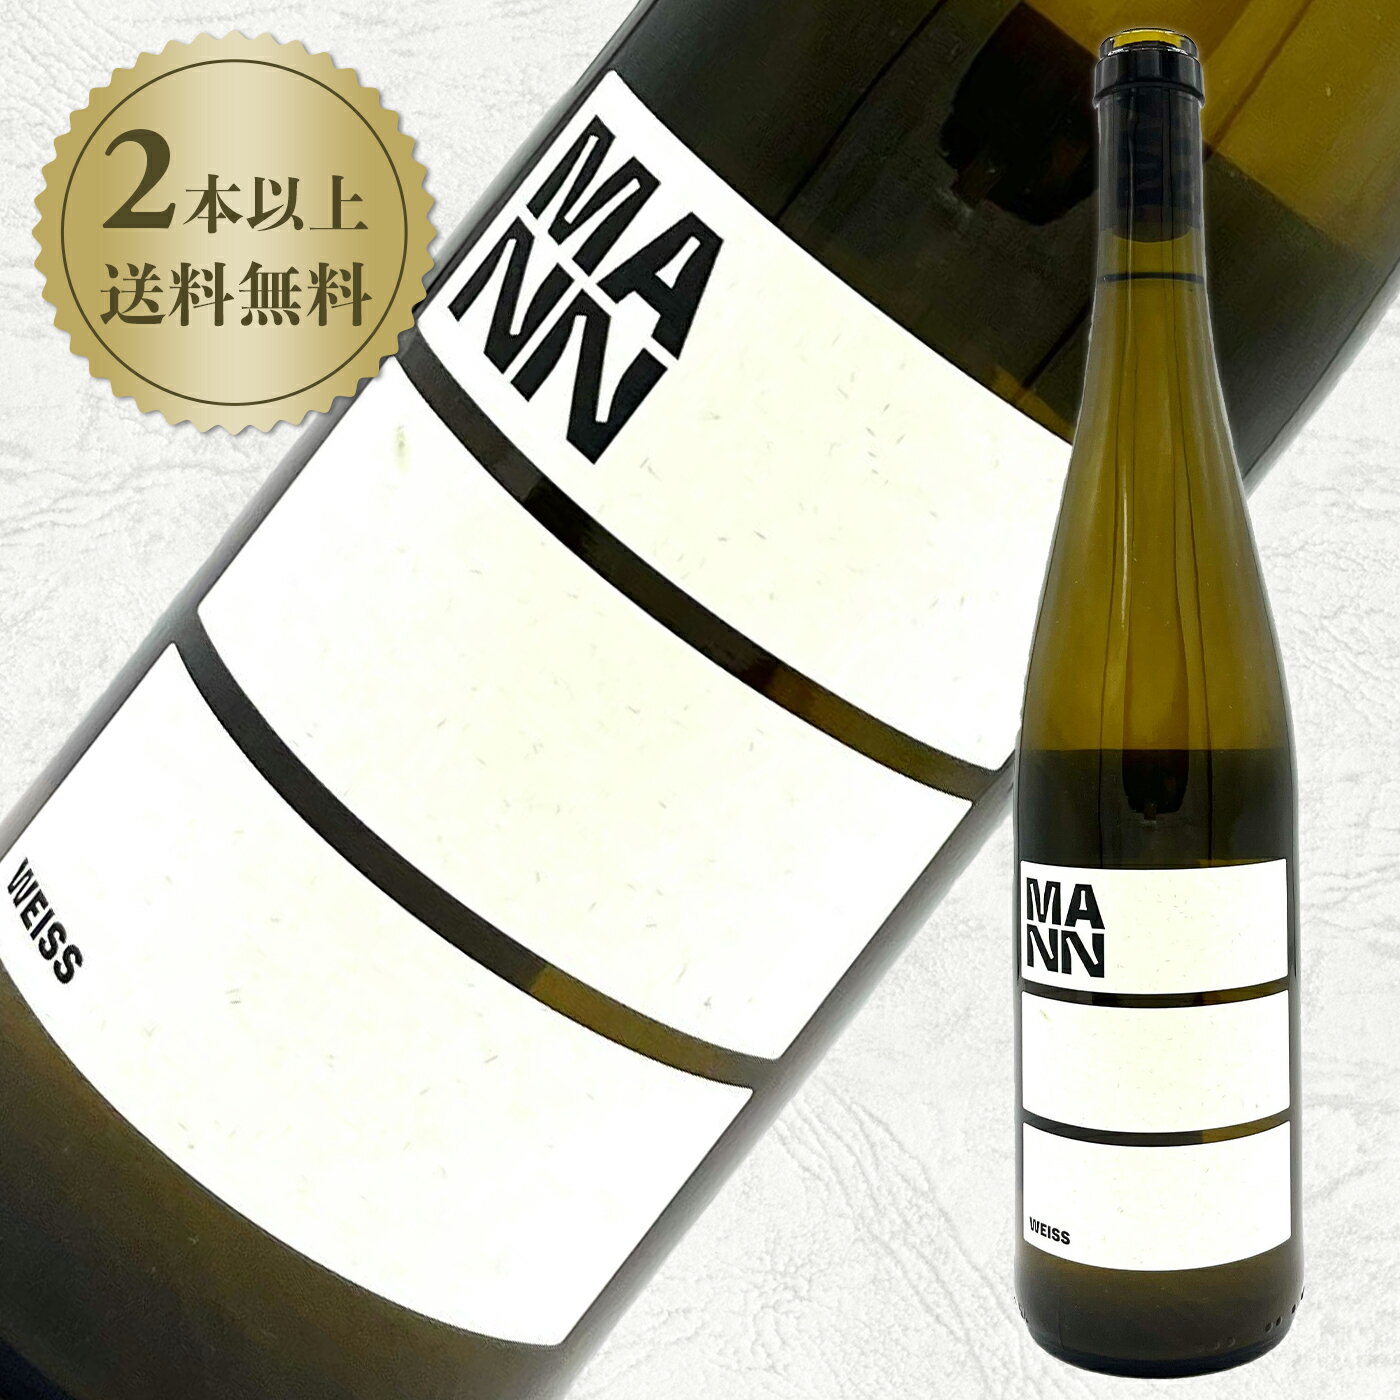 【ナチュラルワイン 自然派ワイン】ヴァイングート・マン　ヴァイス2021 白ワイン ナチュラルワイン 自然派ワイン ドイツ